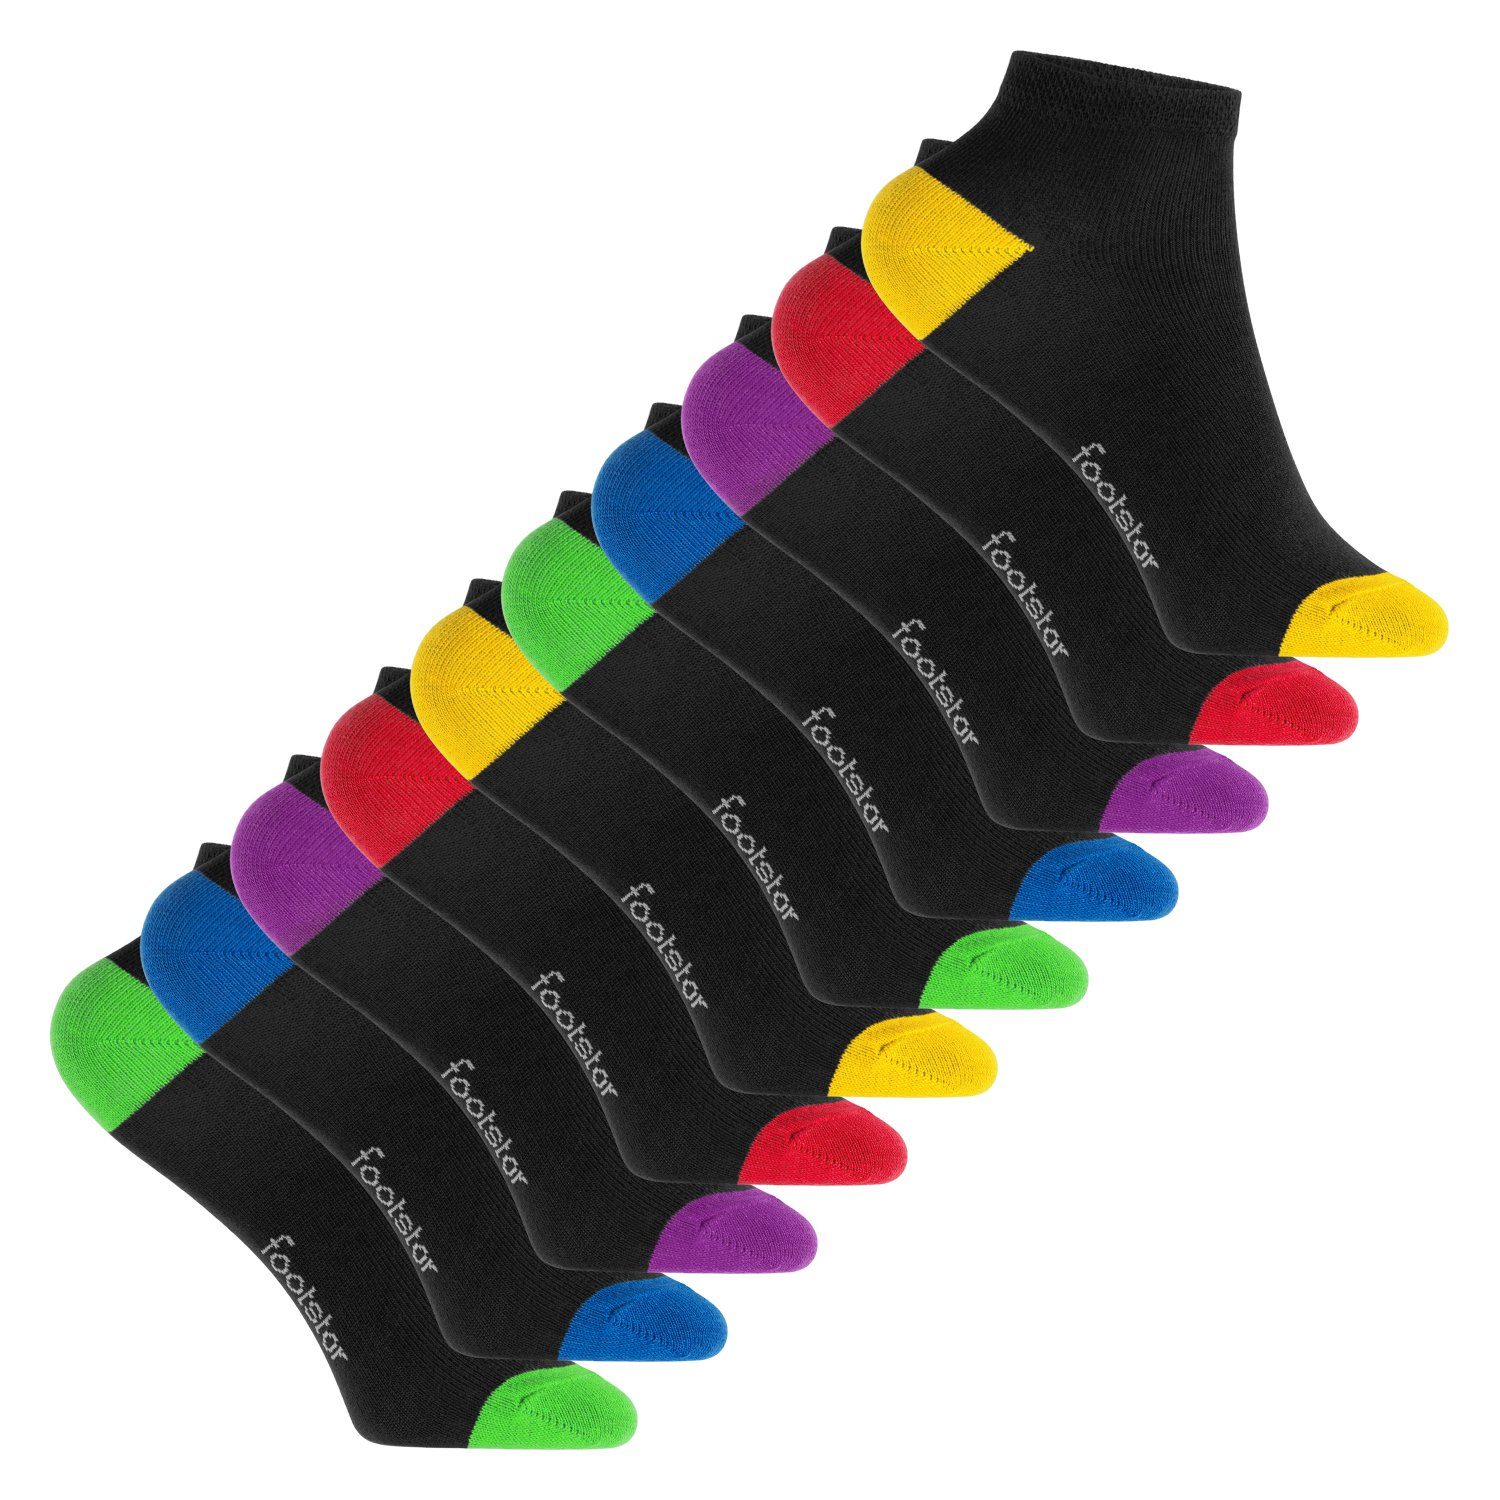 celodoro Kurzsocken Kinder Baumwoll Kurzschaft Socken (10 Paar) Funfarben